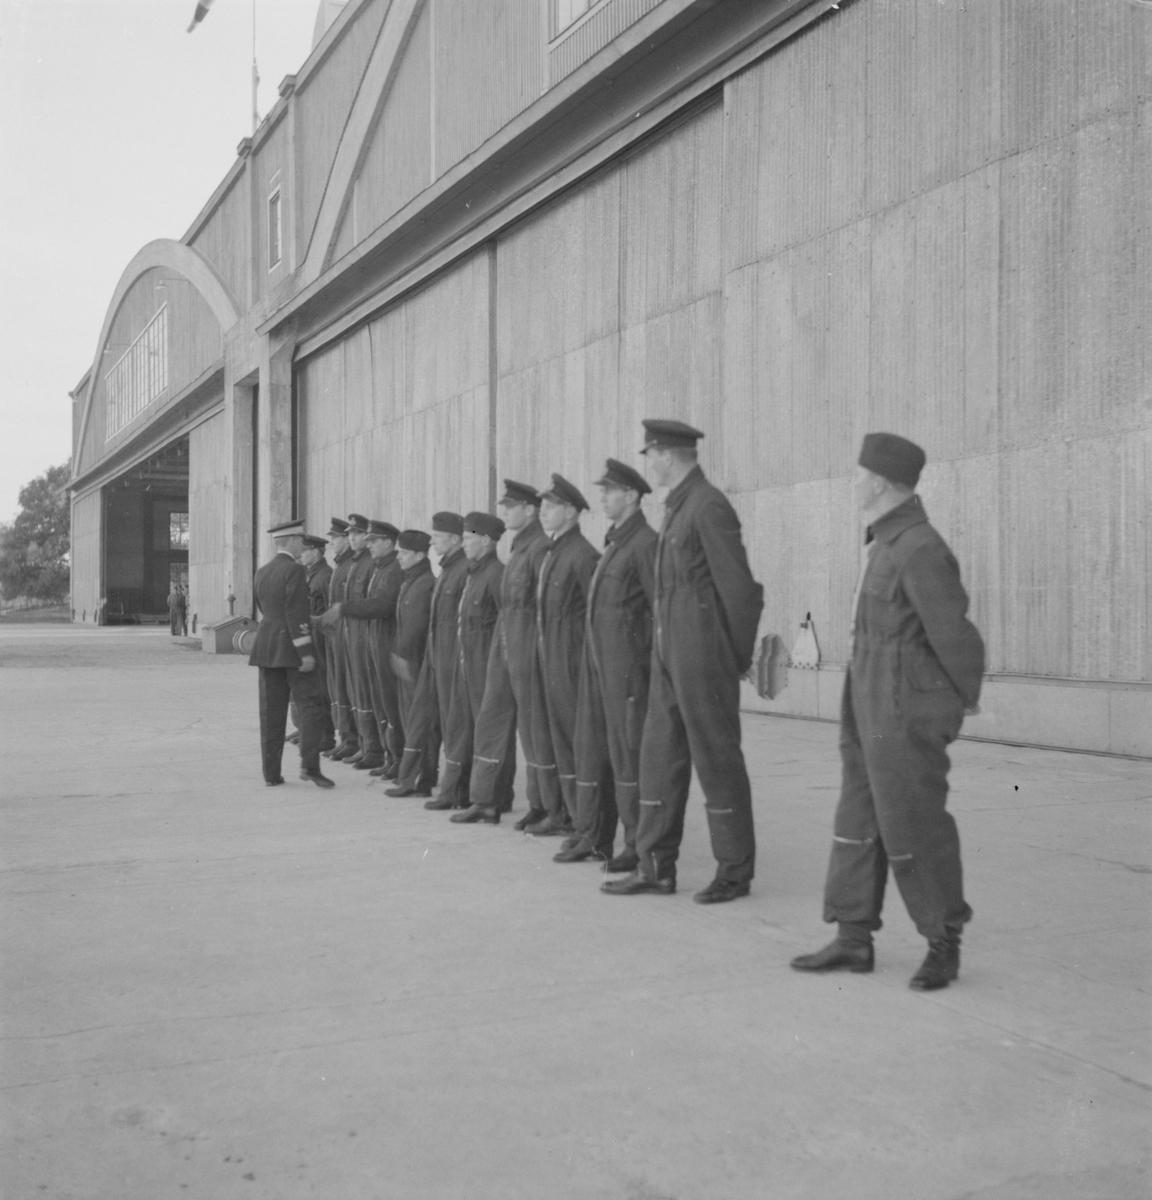 Flygvapenchefen Torsten Friis inspekterar marinspaningskursen på Fårösund, 1937. Hälsning på manskap uppställt framför hangar.